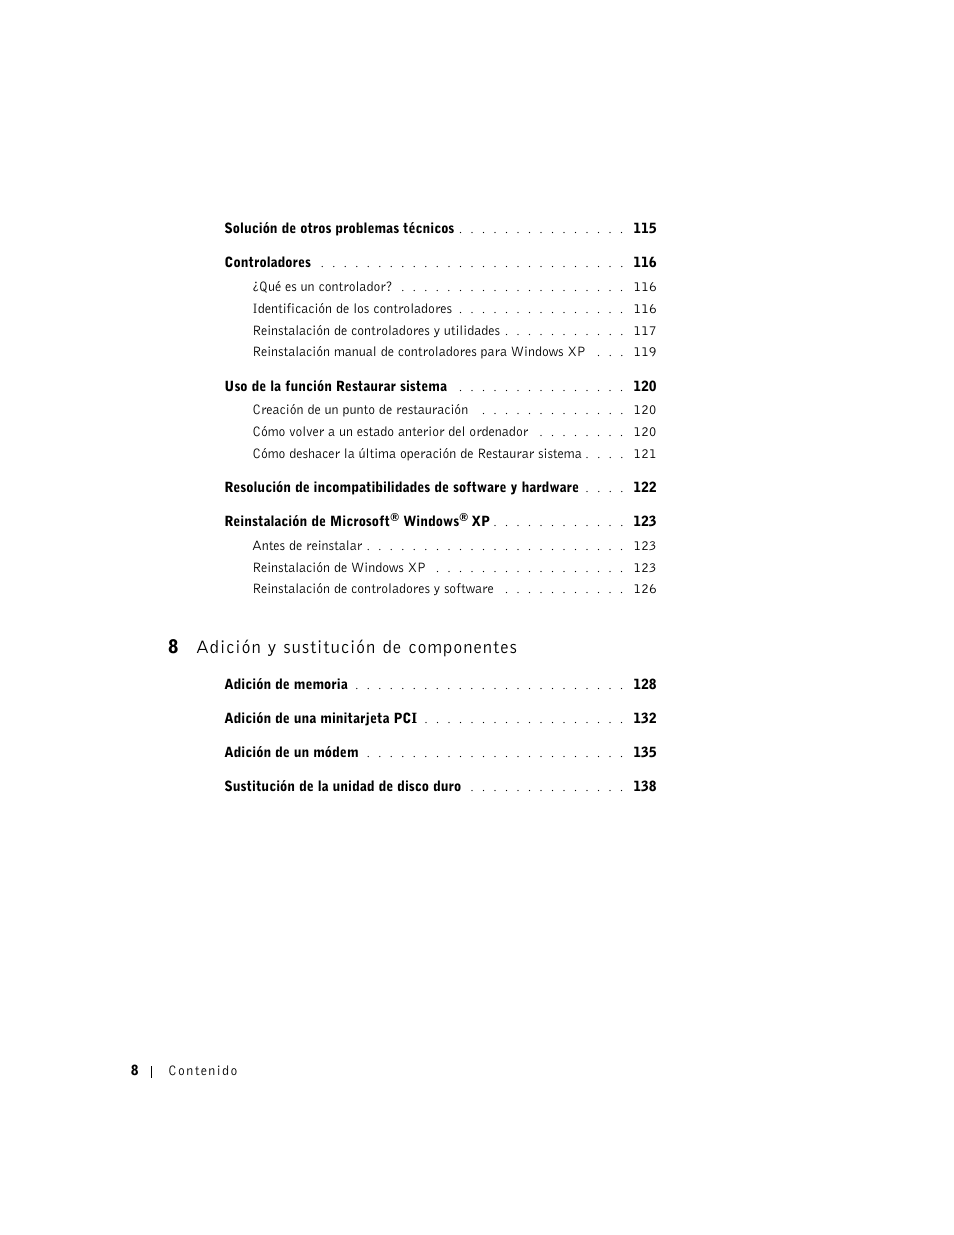 8 adición y sustitución de componentes | Dell Inspiron 8500 Manual del usuario | Página 8 / 190